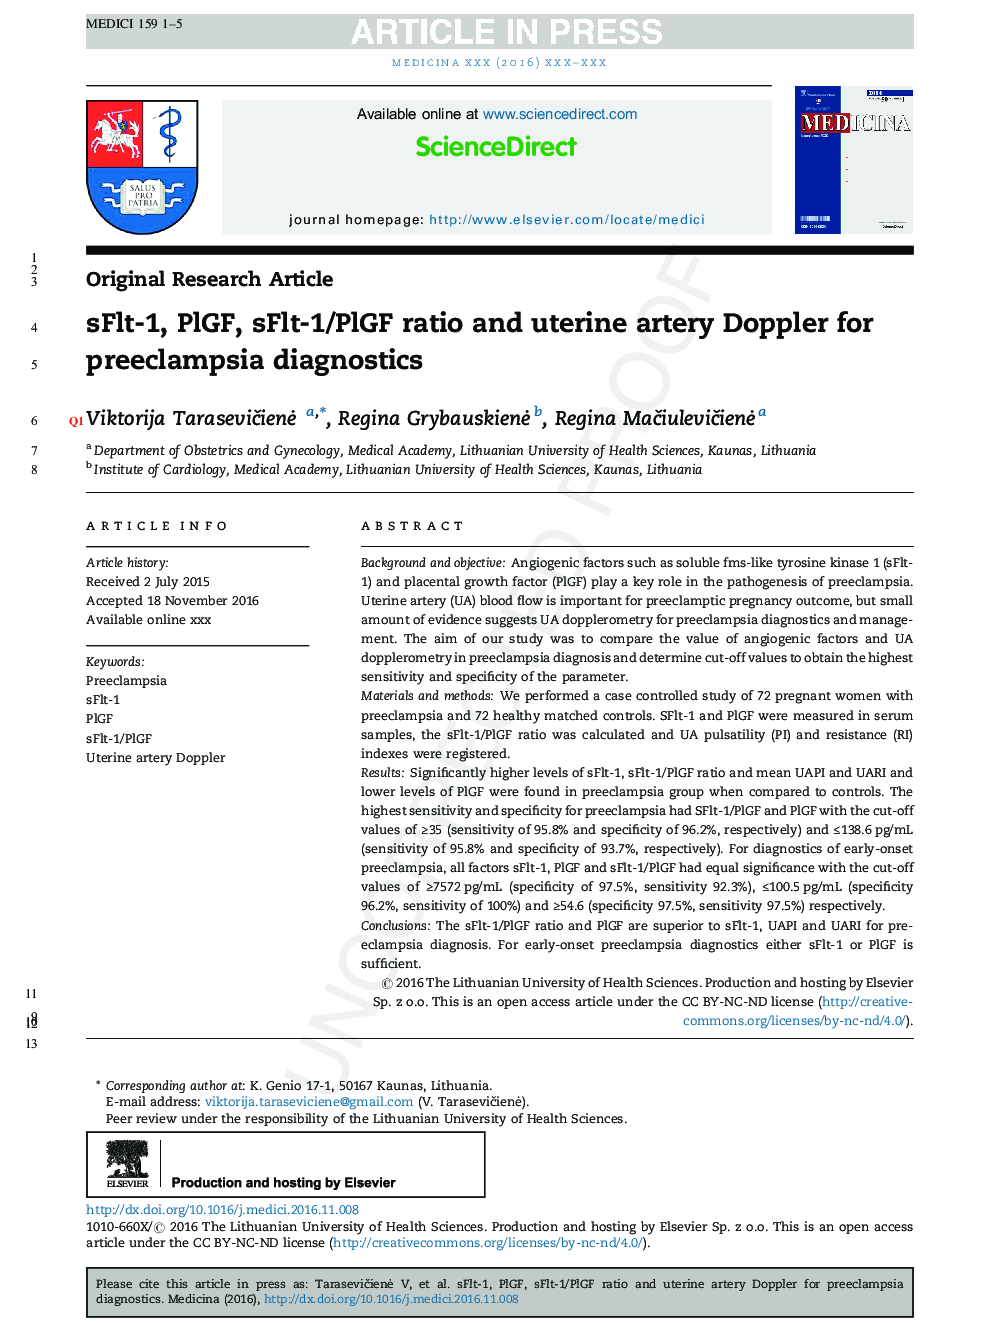 sFlt-1, PlGF, sFlt-1/PlGF ratio and uterine artery Doppler for preeclampsia diagnostics